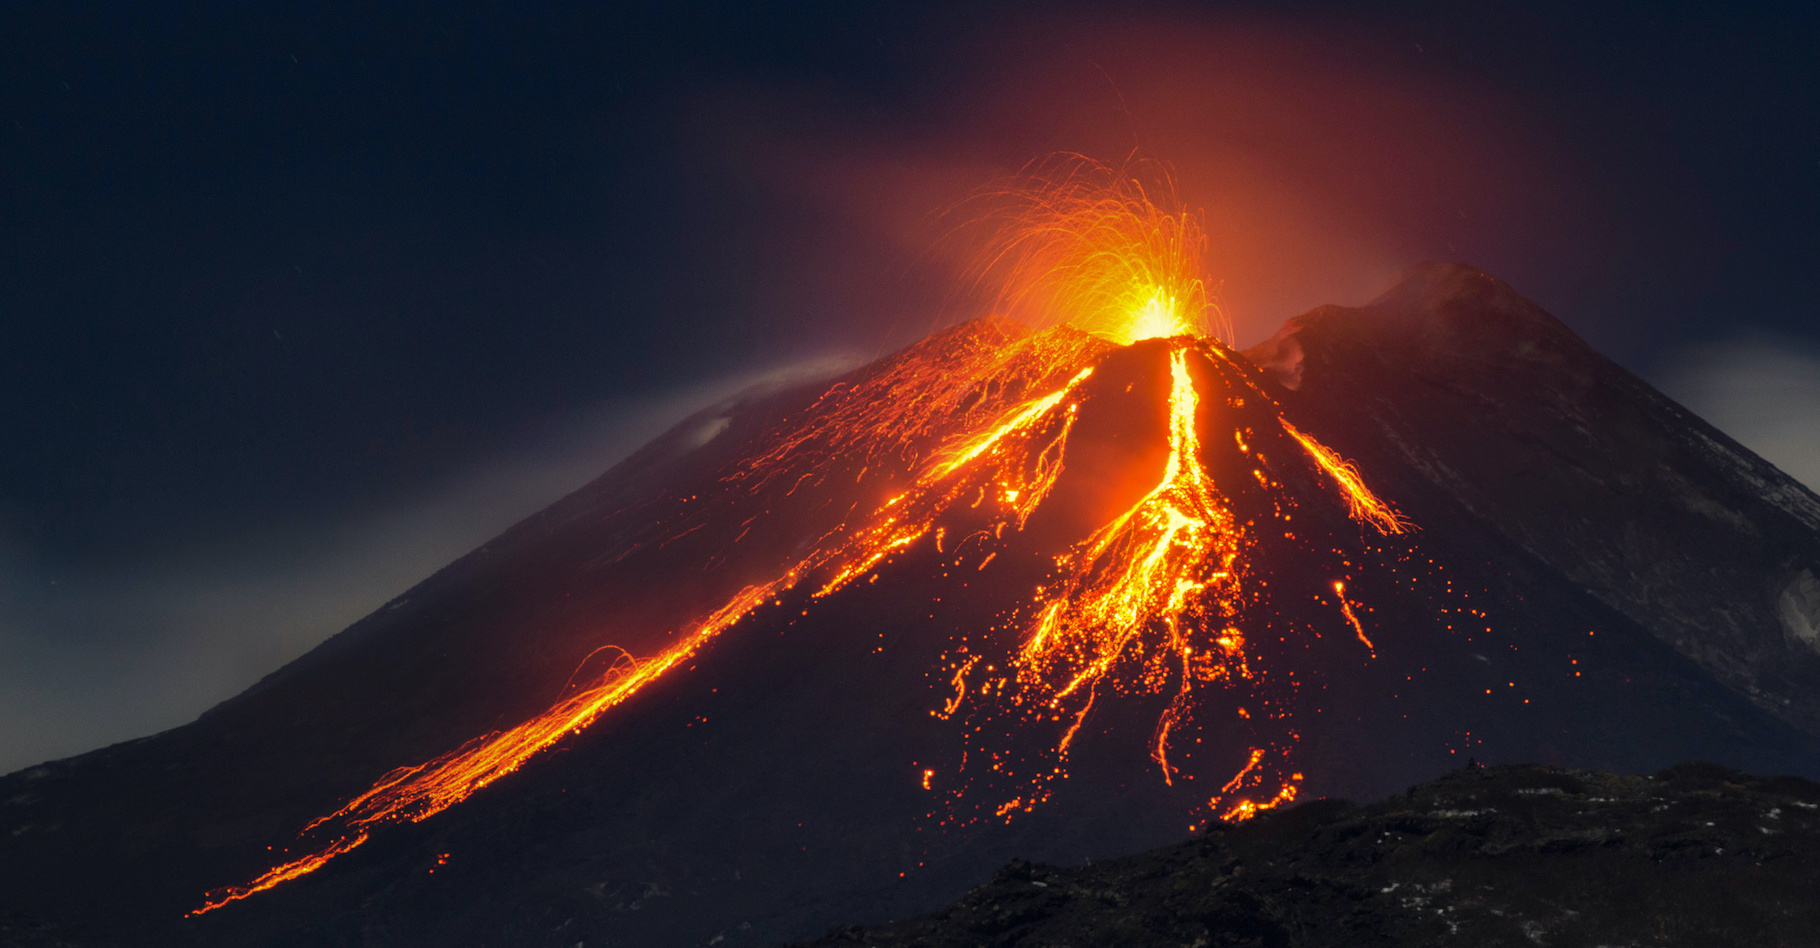 Les volcans résultent de la remontée de magma depuis la base de la lithosphère et de la surpression dans les réservoirs magmatiques © ftomarchio, Adobe Stock